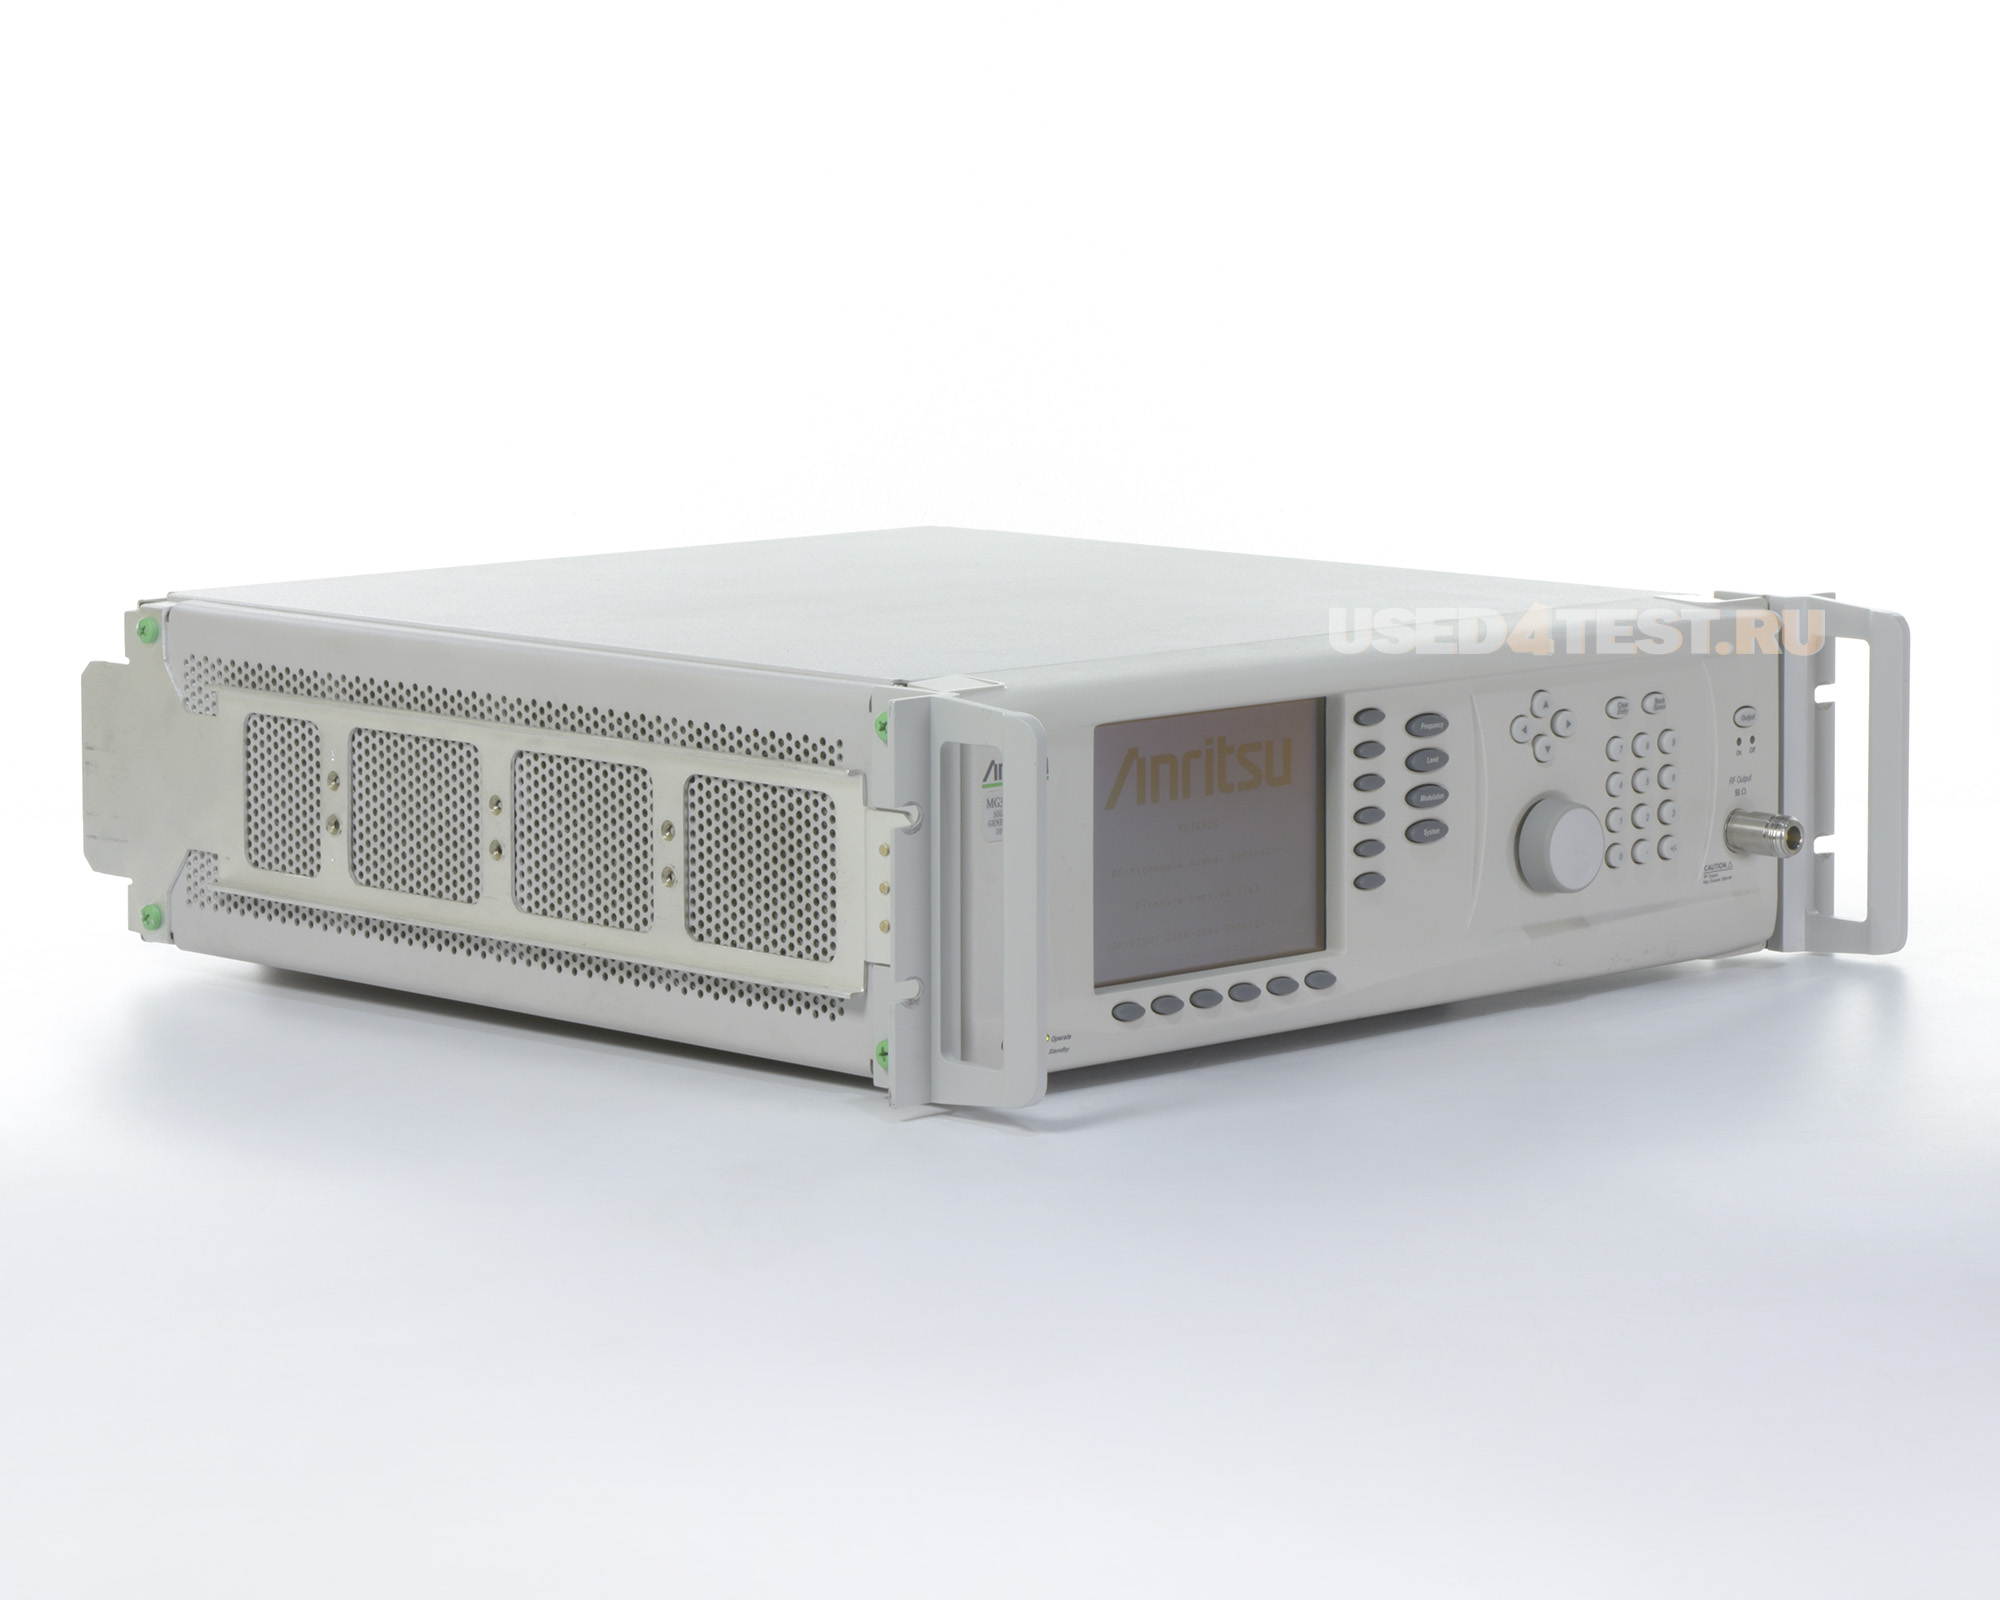 Генератор сигналов Anritsu MG3692C
 с диапазоном от 0,1 Гц до 20 ГГц
 
 В комплекте с опциями:

	
	MG3690C/1A — Rack Mount with slides
	
	MG3690C/4 — 8 MHz to 2.2 GHz RF coverage, Ultra-Low Phase Noise version
	
	SM4743 — N (f) output connector 


 Стоимость указана в Рублях DDP Москва по безналичному расчету включая НДС 20%
